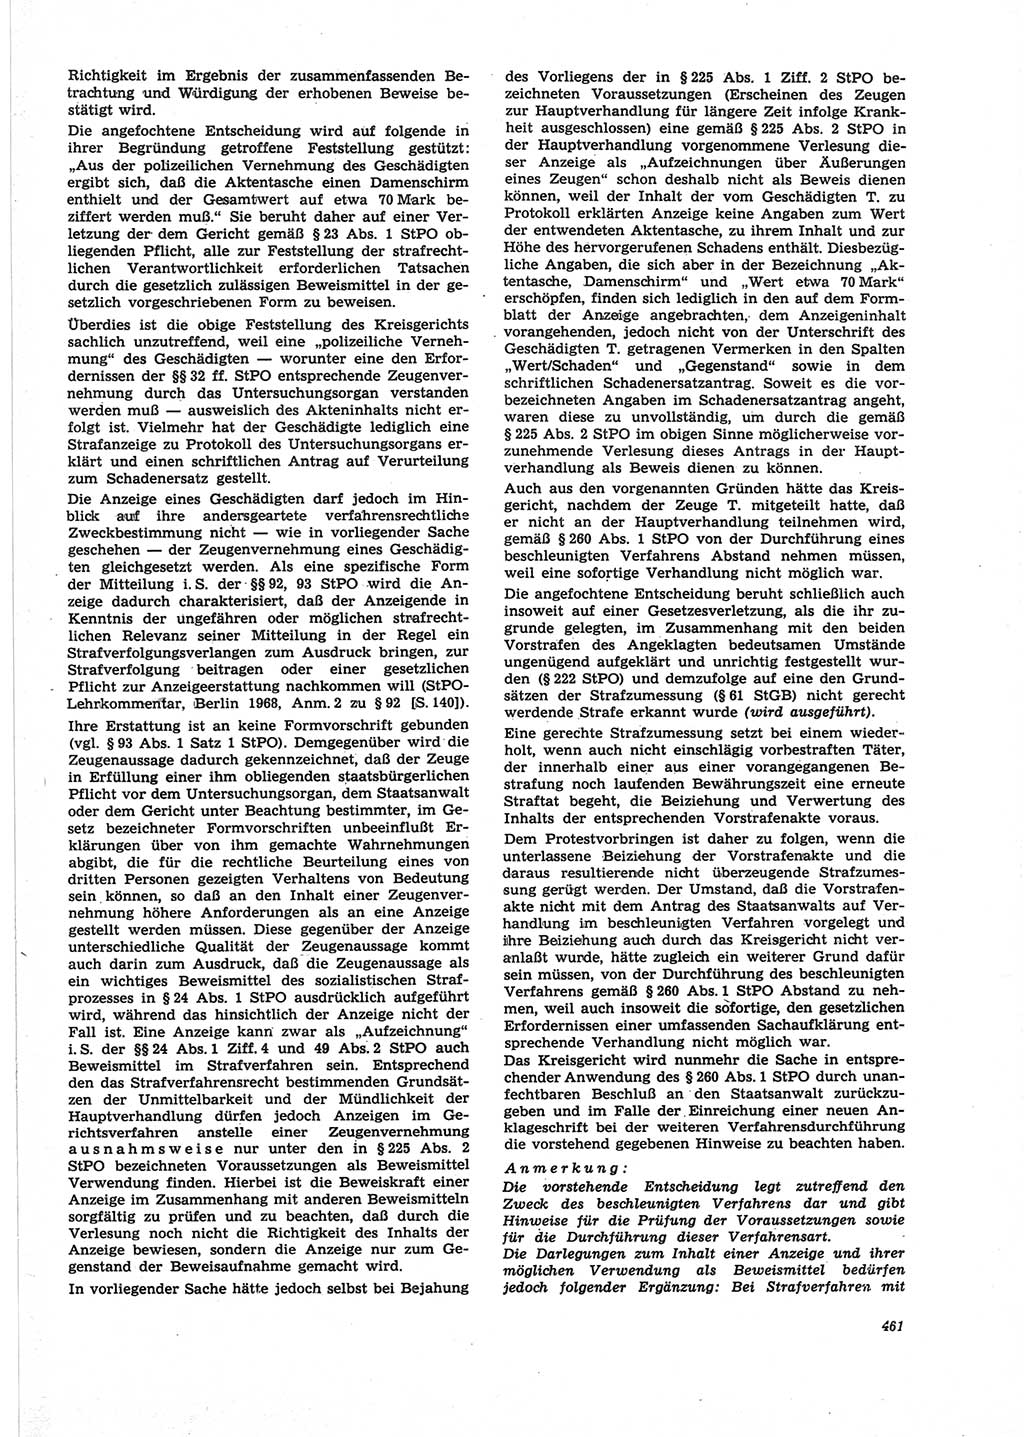 Neue Justiz (NJ), Zeitschrift für Recht und Rechtswissenschaft [Deutsche Demokratische Republik (DDR)], 25. Jahrgang 1971, Seite 461 (NJ DDR 1971, S. 461)